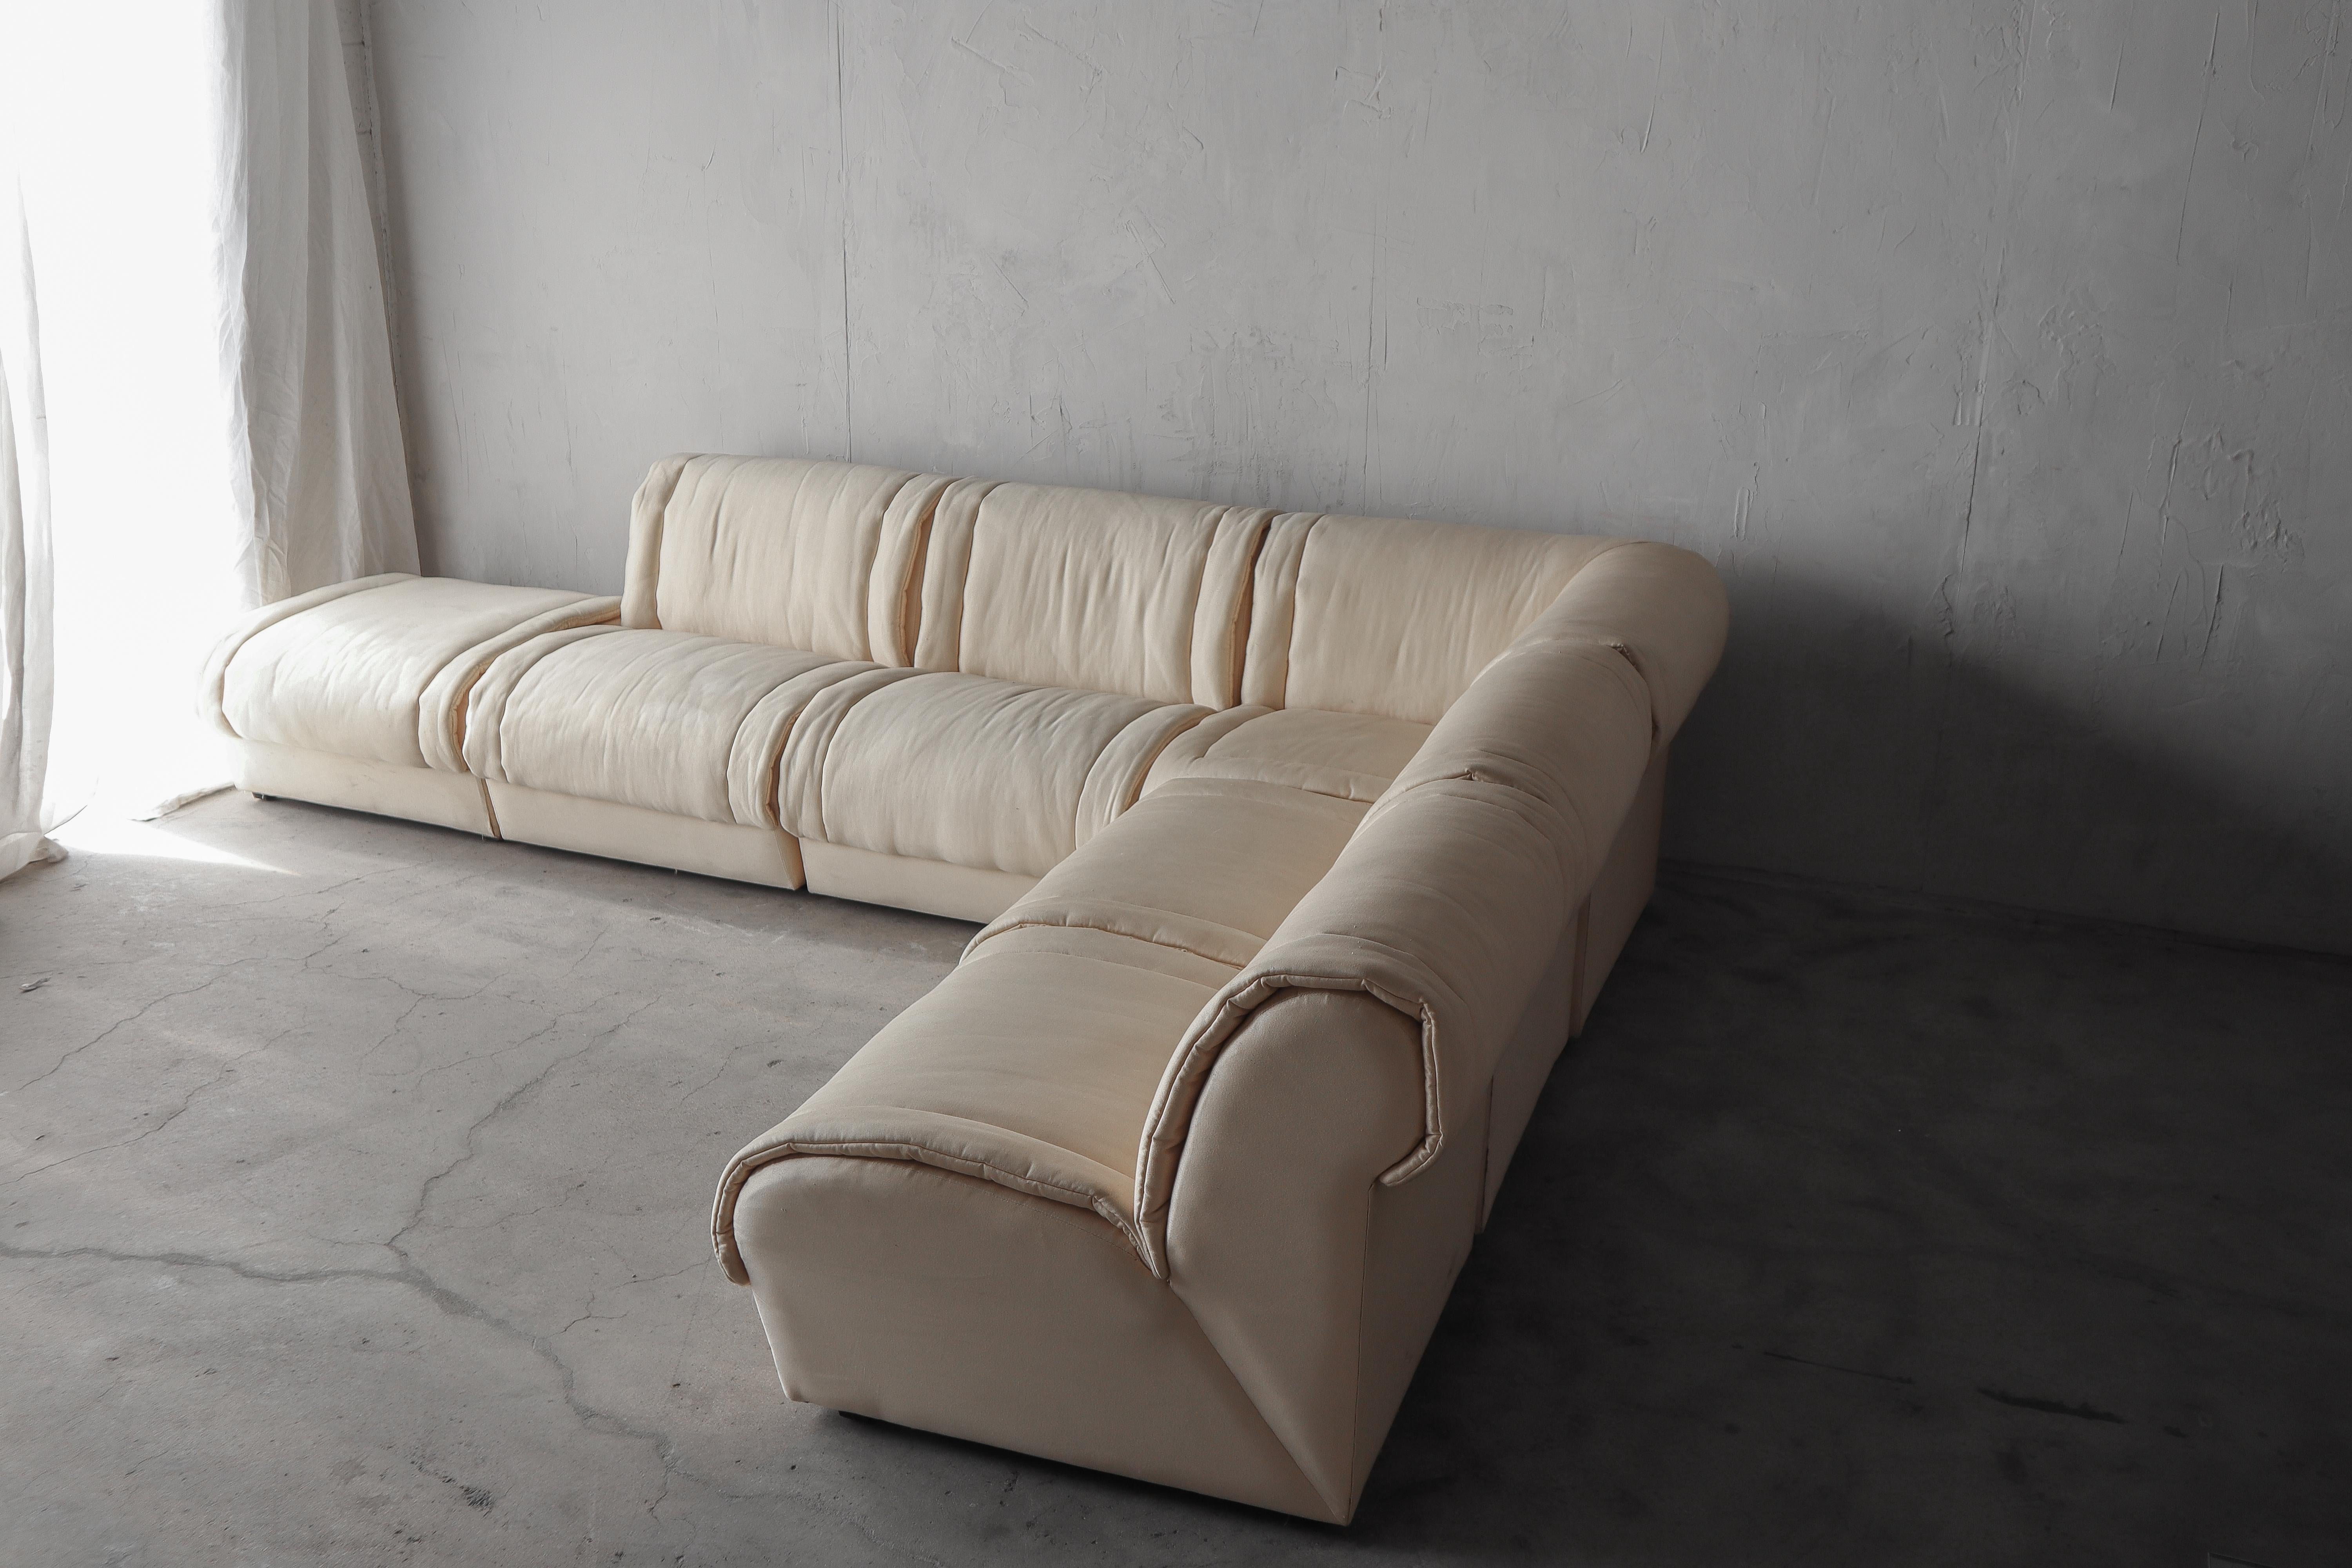 Superbe canapé sectionnel modulaire post-moderne de 6 pièces attribué à Rolf Benz. Un canapé magnifique qui fera sensation.

Le canapé est vendu tel qu'il a été trouvé, un rembourrage est nécessaire mais le cadre est solide. Nous avons fixé des